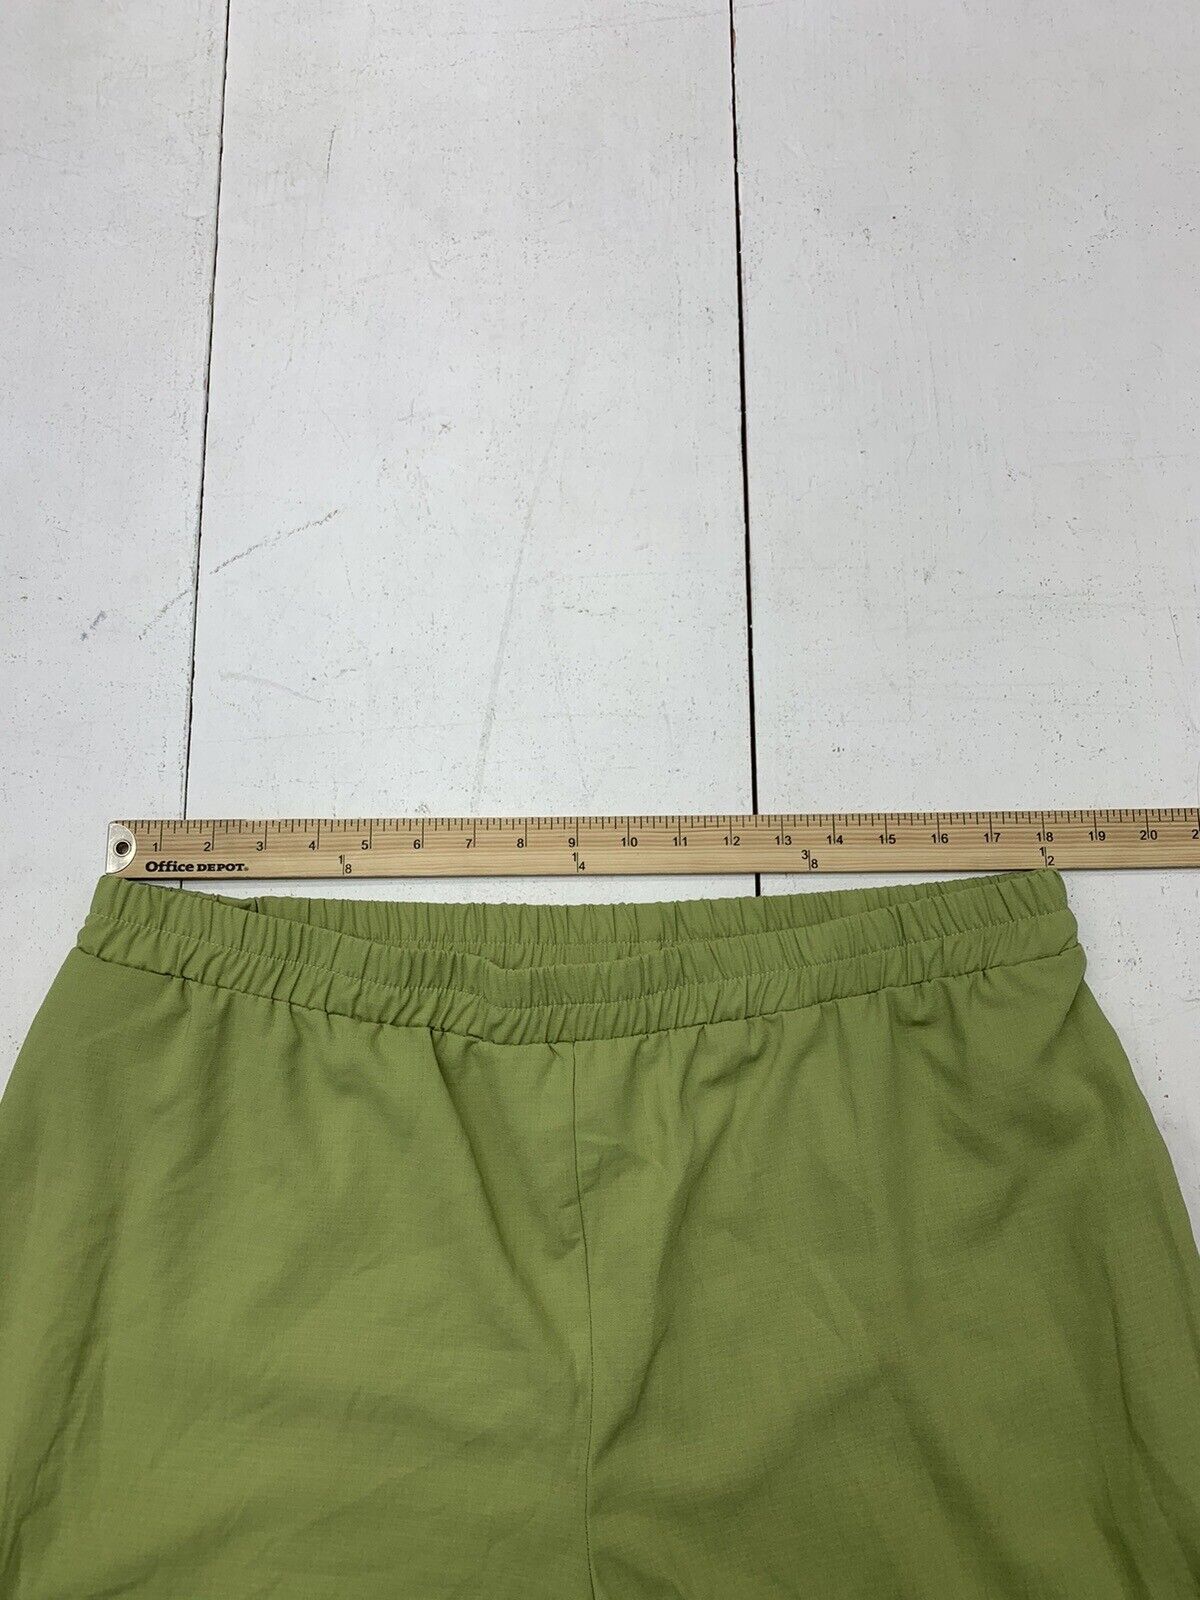 Zolucky Womens Green Elastic Waist Pants Size 1X - beyond exchange